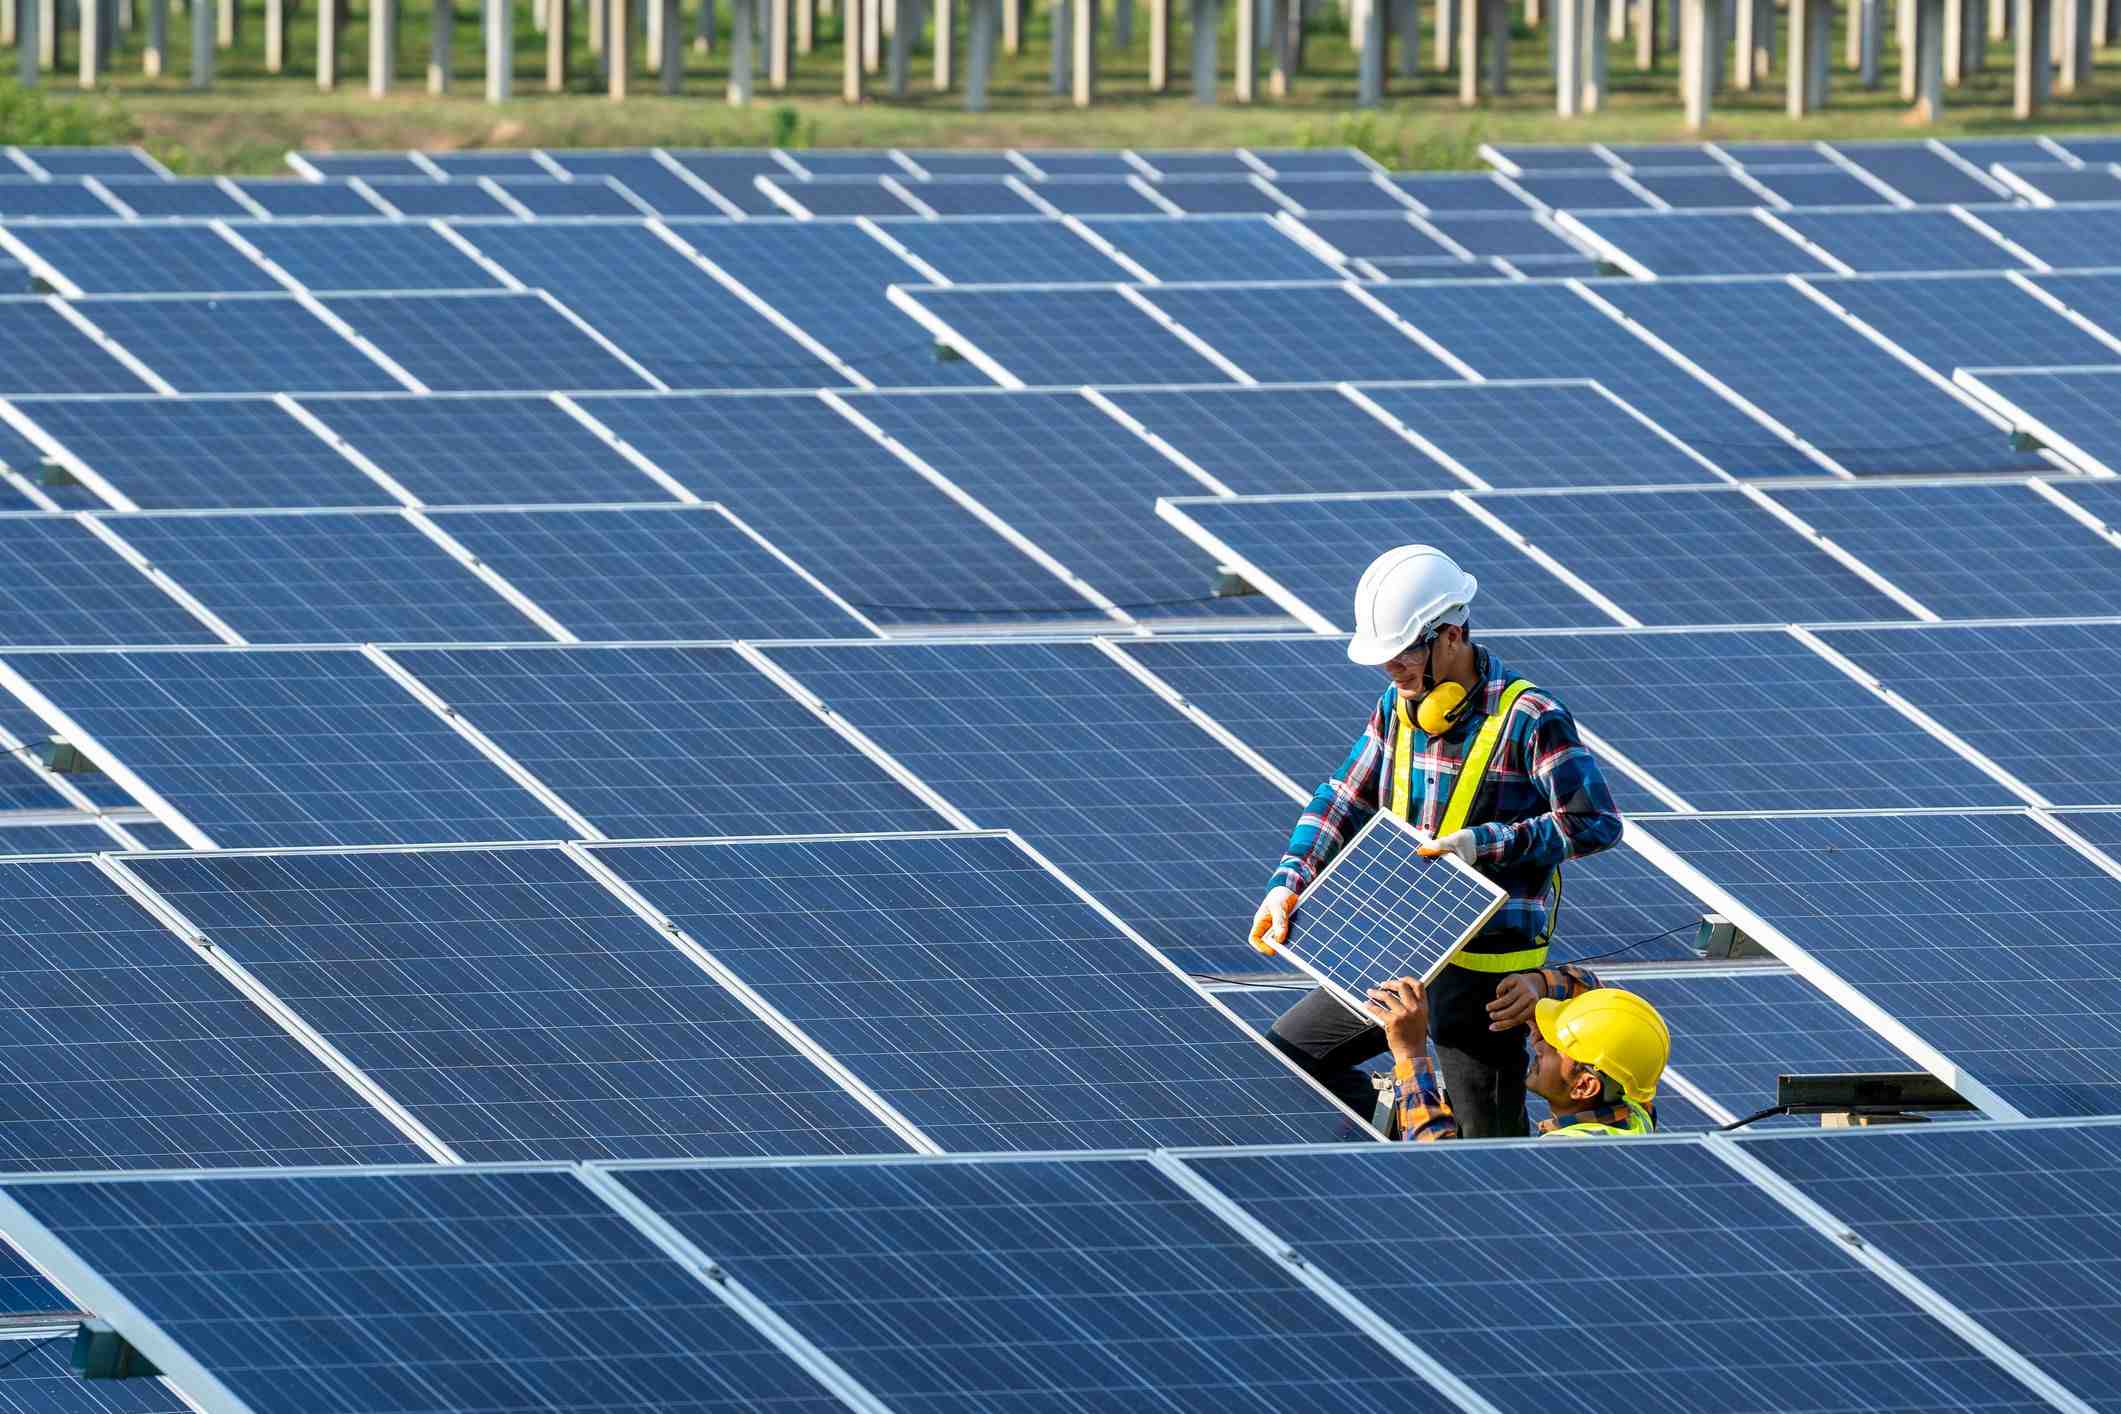 Can the world run on solar power?